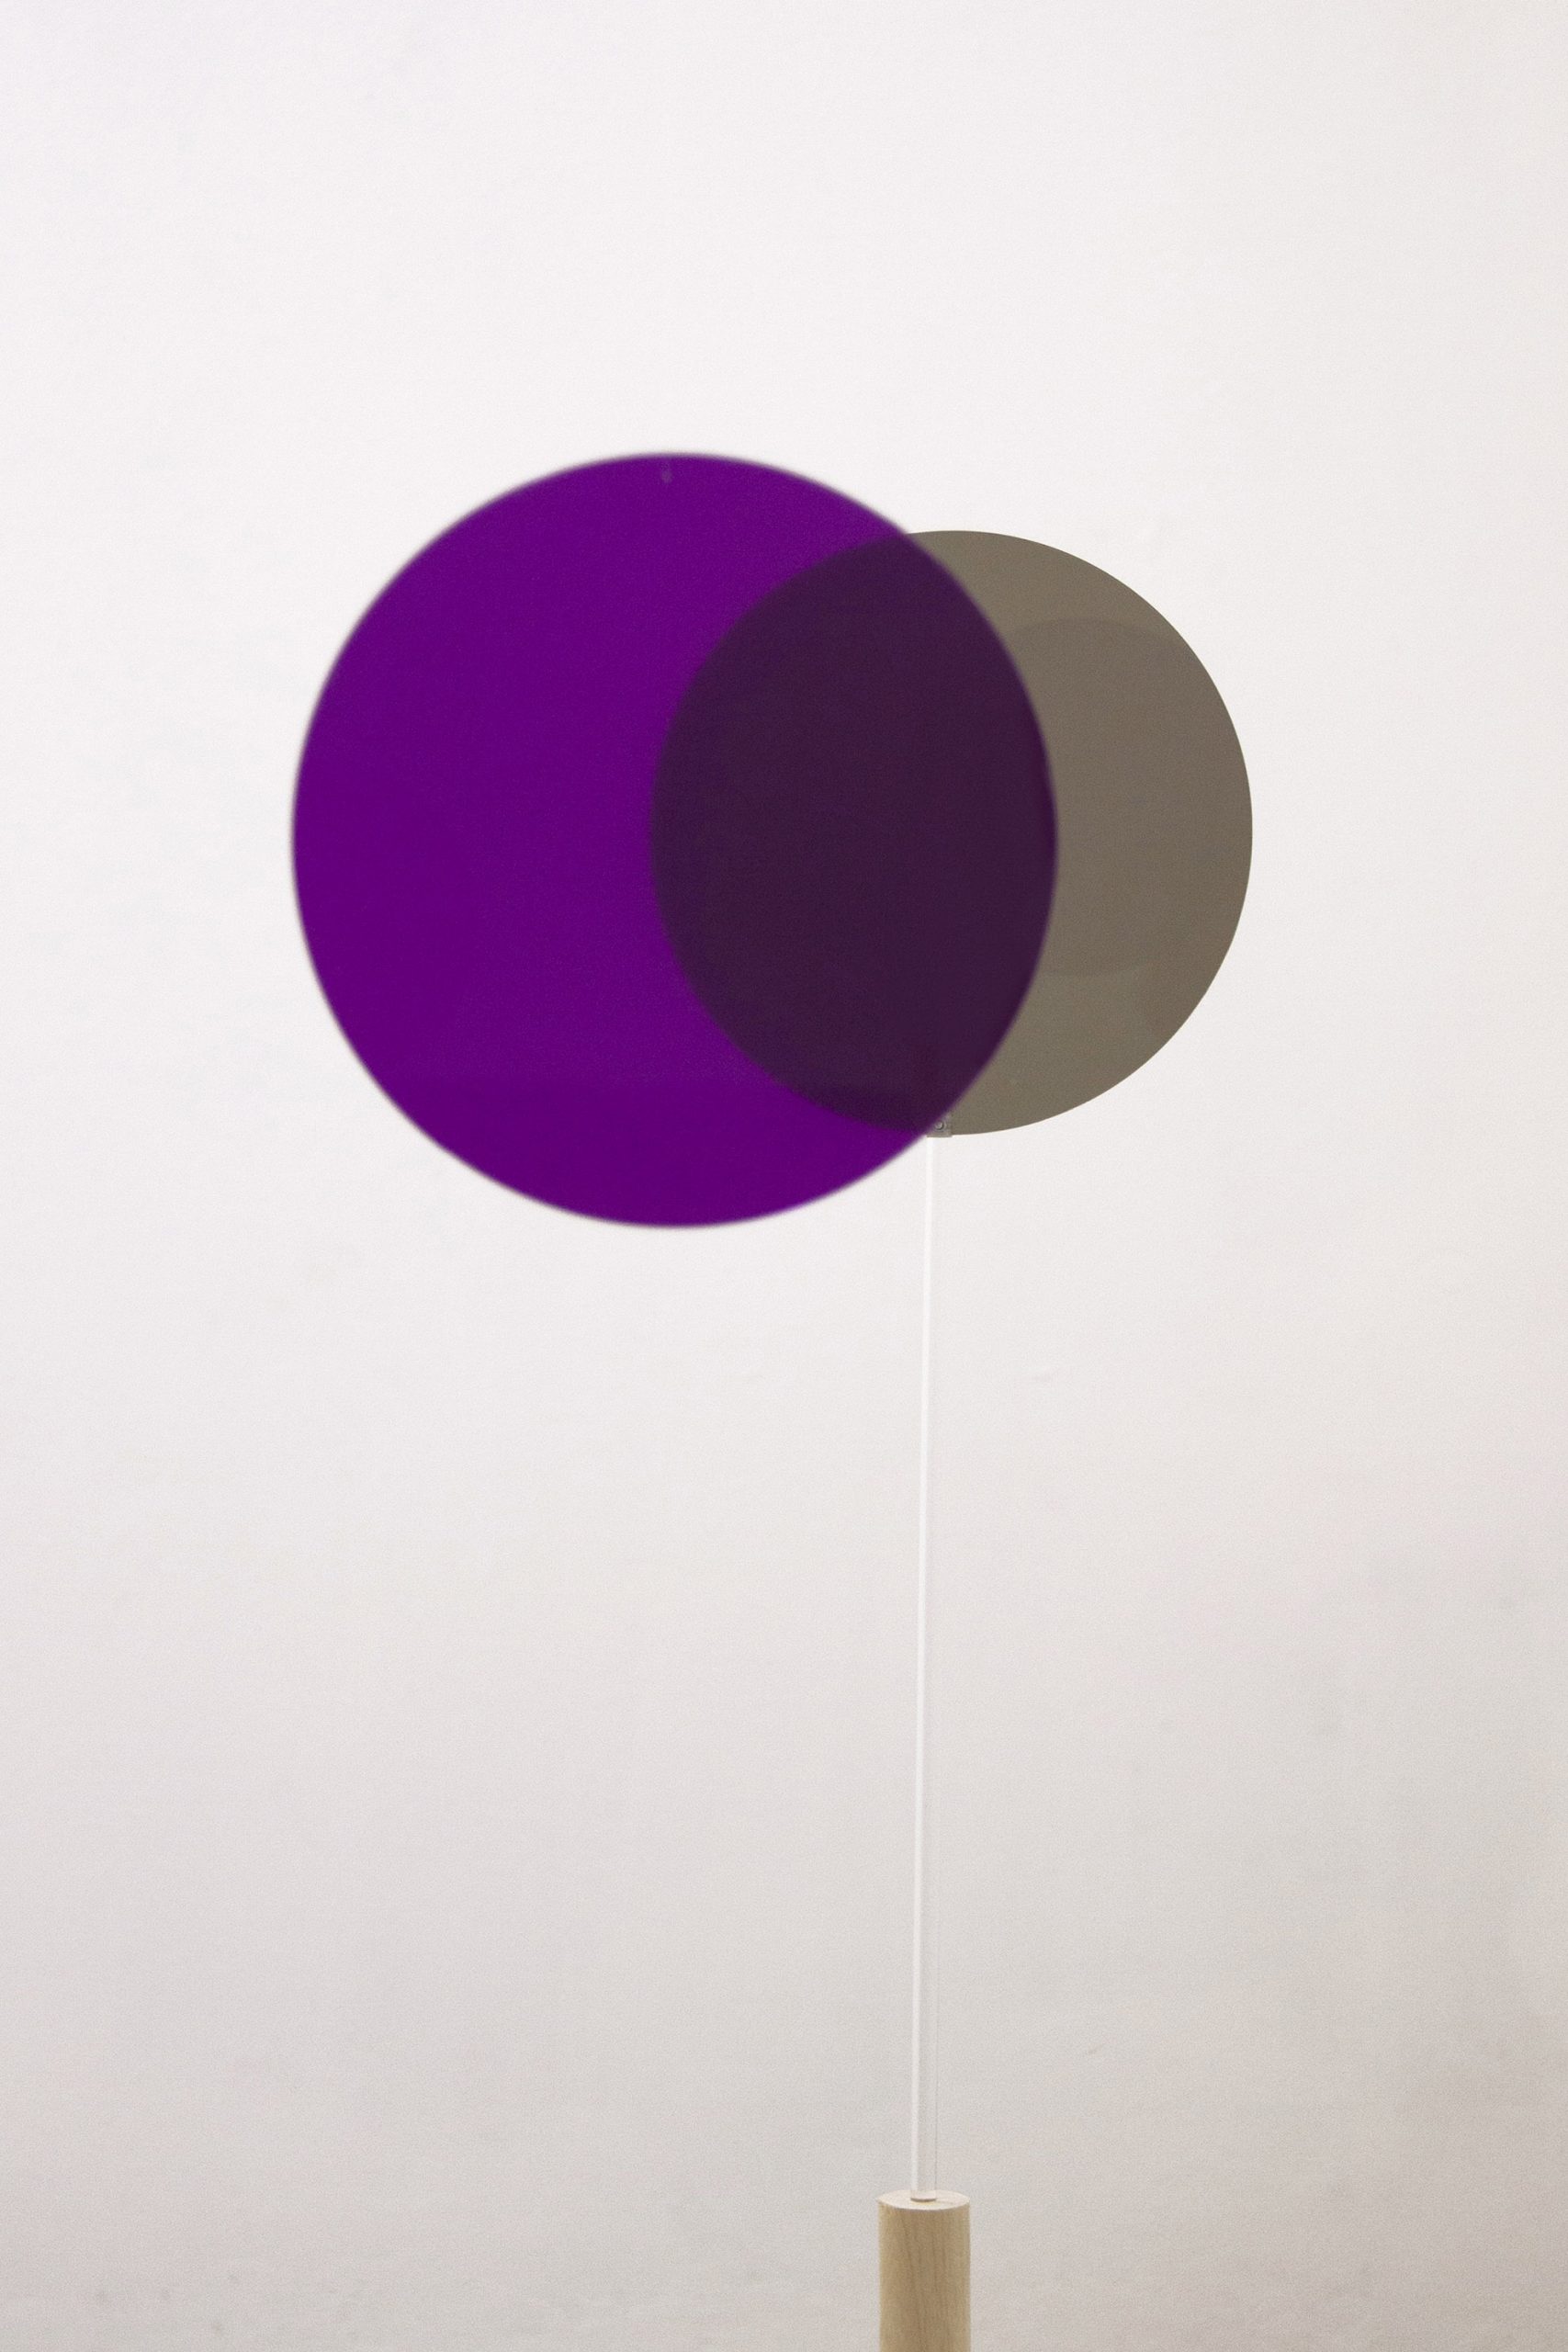 Giulia Fumagalli, detail “Lasciarsi eclissare grigio - viola”, 2019, plexiglass, adhesive films, nylon wire, wood, cement, 143 cm x variable dimensions